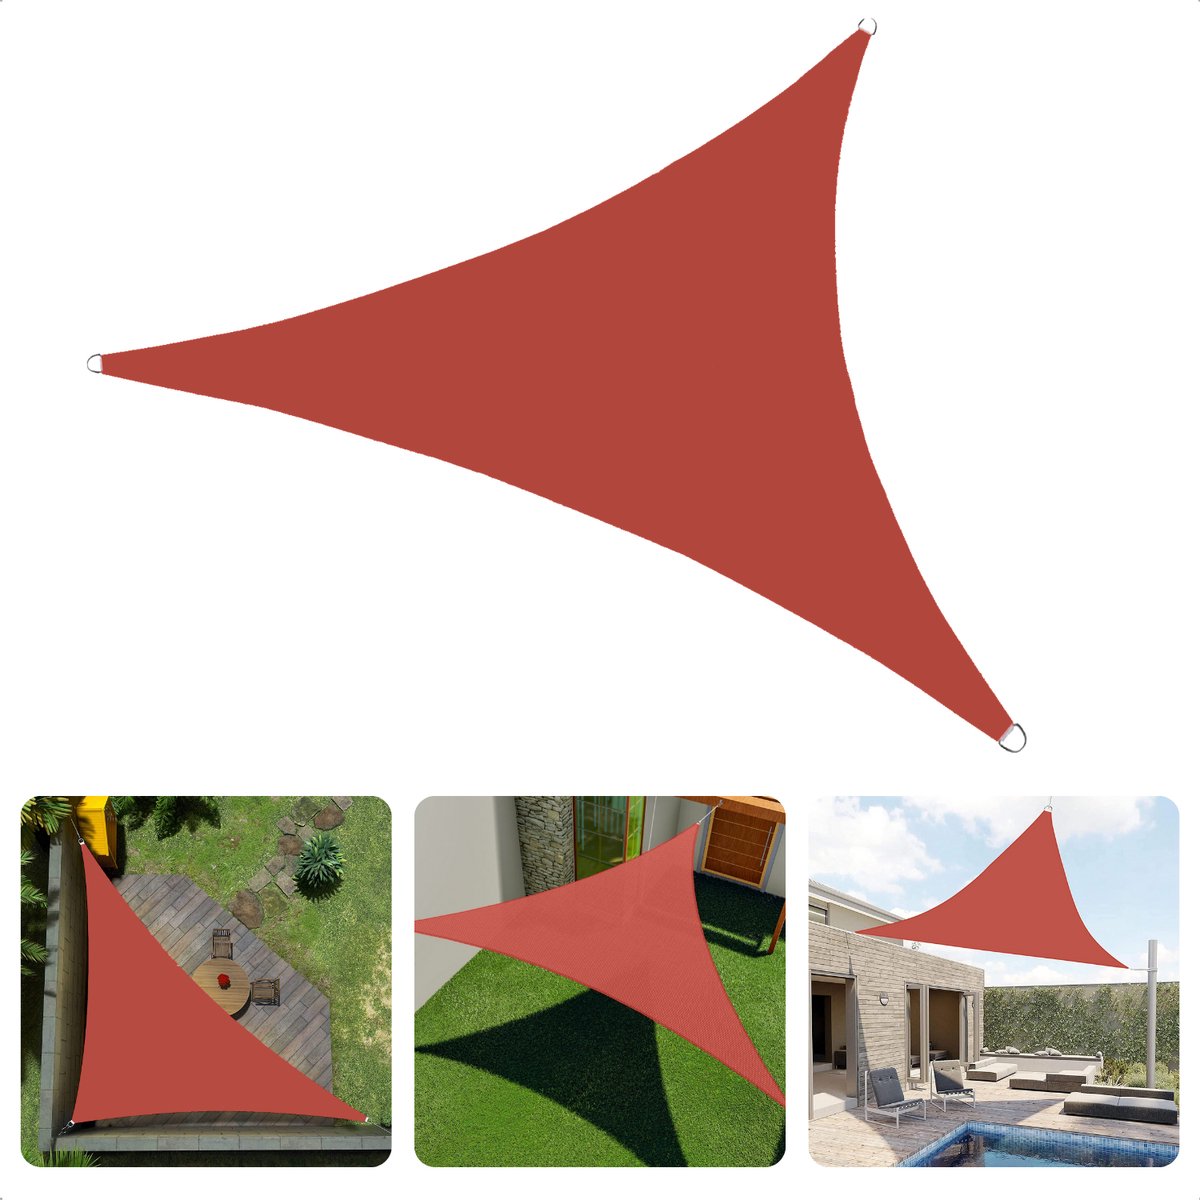 Cheqo® Schaduwdoek Driehoek - Terra Rood - Waterafstotend Polyester 100% - Compleet met Touw - Verpakt in Afsluitbare Draagzak - 360x360x360cm